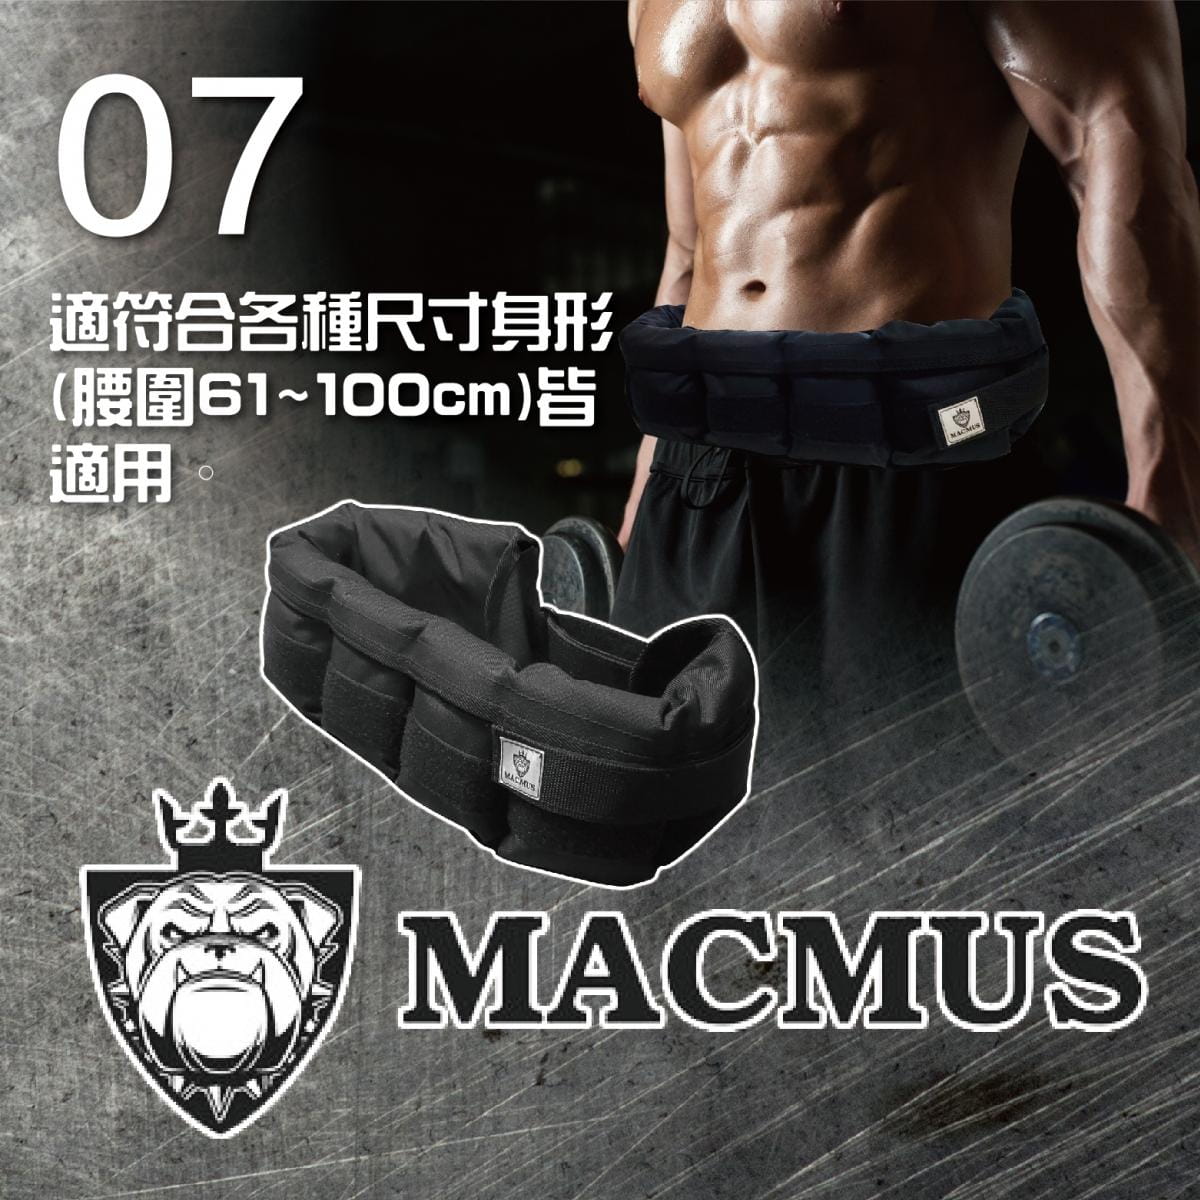 【MACMUS】8公斤負重腰帶｜8格式可調整重訓腰帶｜強化核心肌群鍛鍊腰部肌肉 5